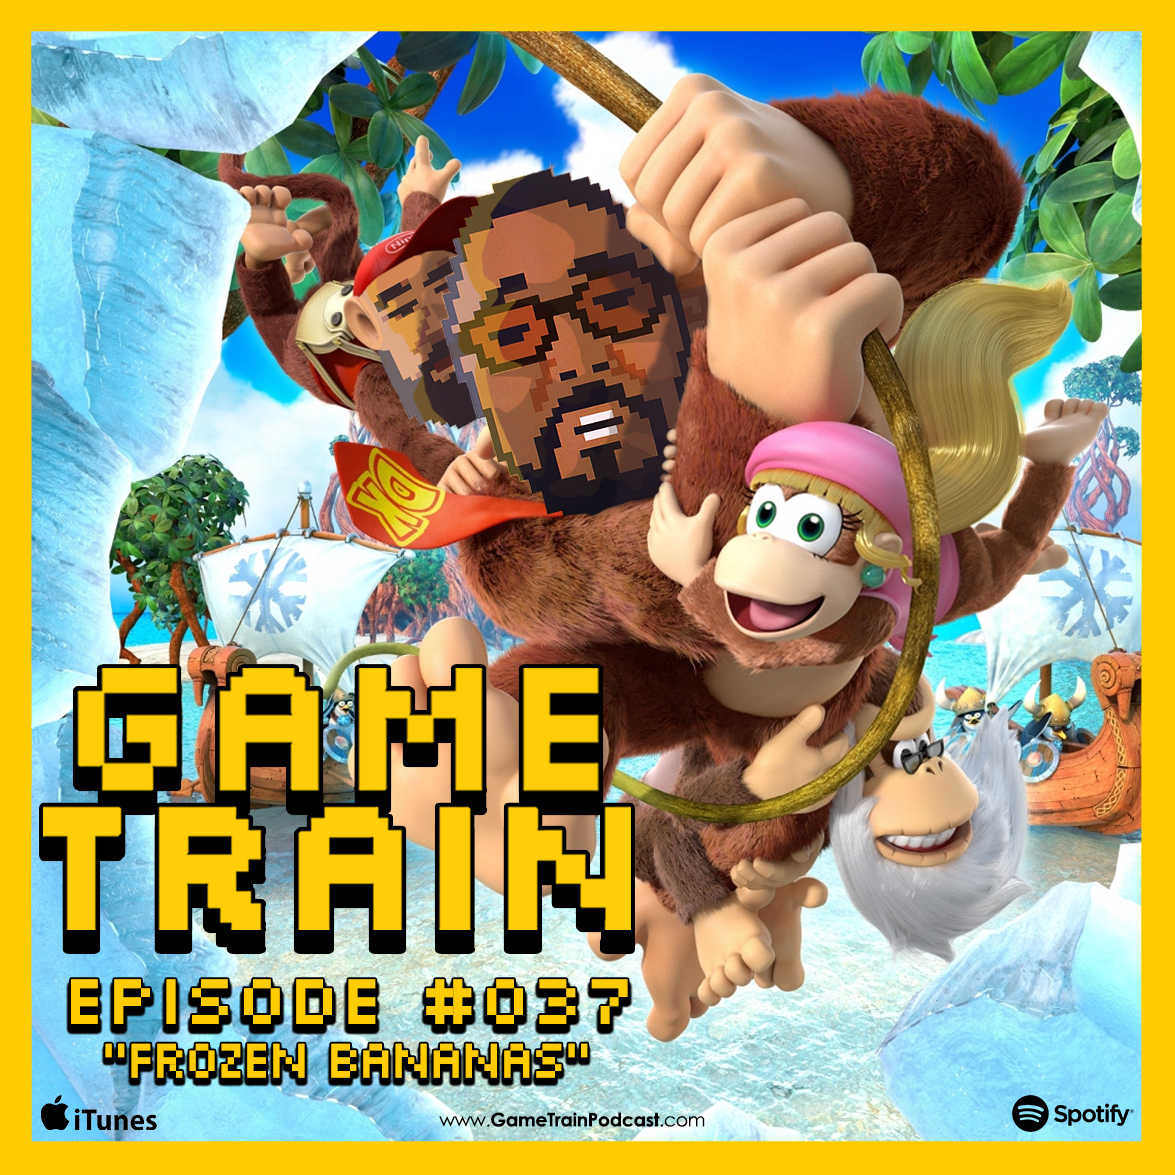 Game Train - Episode #037 ”Frozen Bananas”